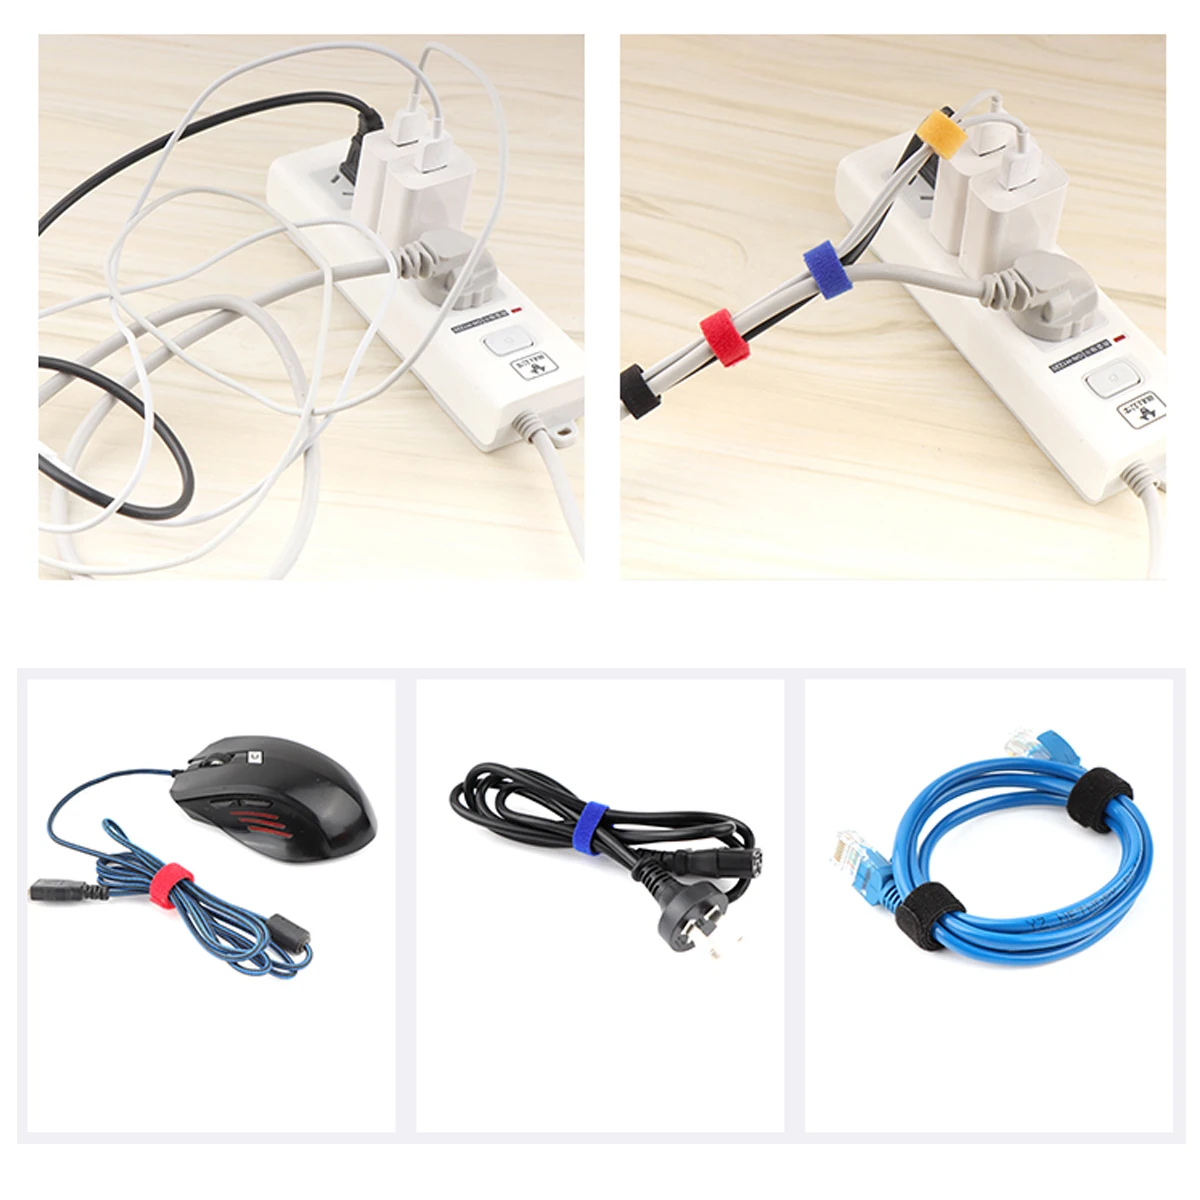 25 шт. многоразовых органайзеров проводов с застежками для управления кабелями на наушниках, телефонах и других устройствах.